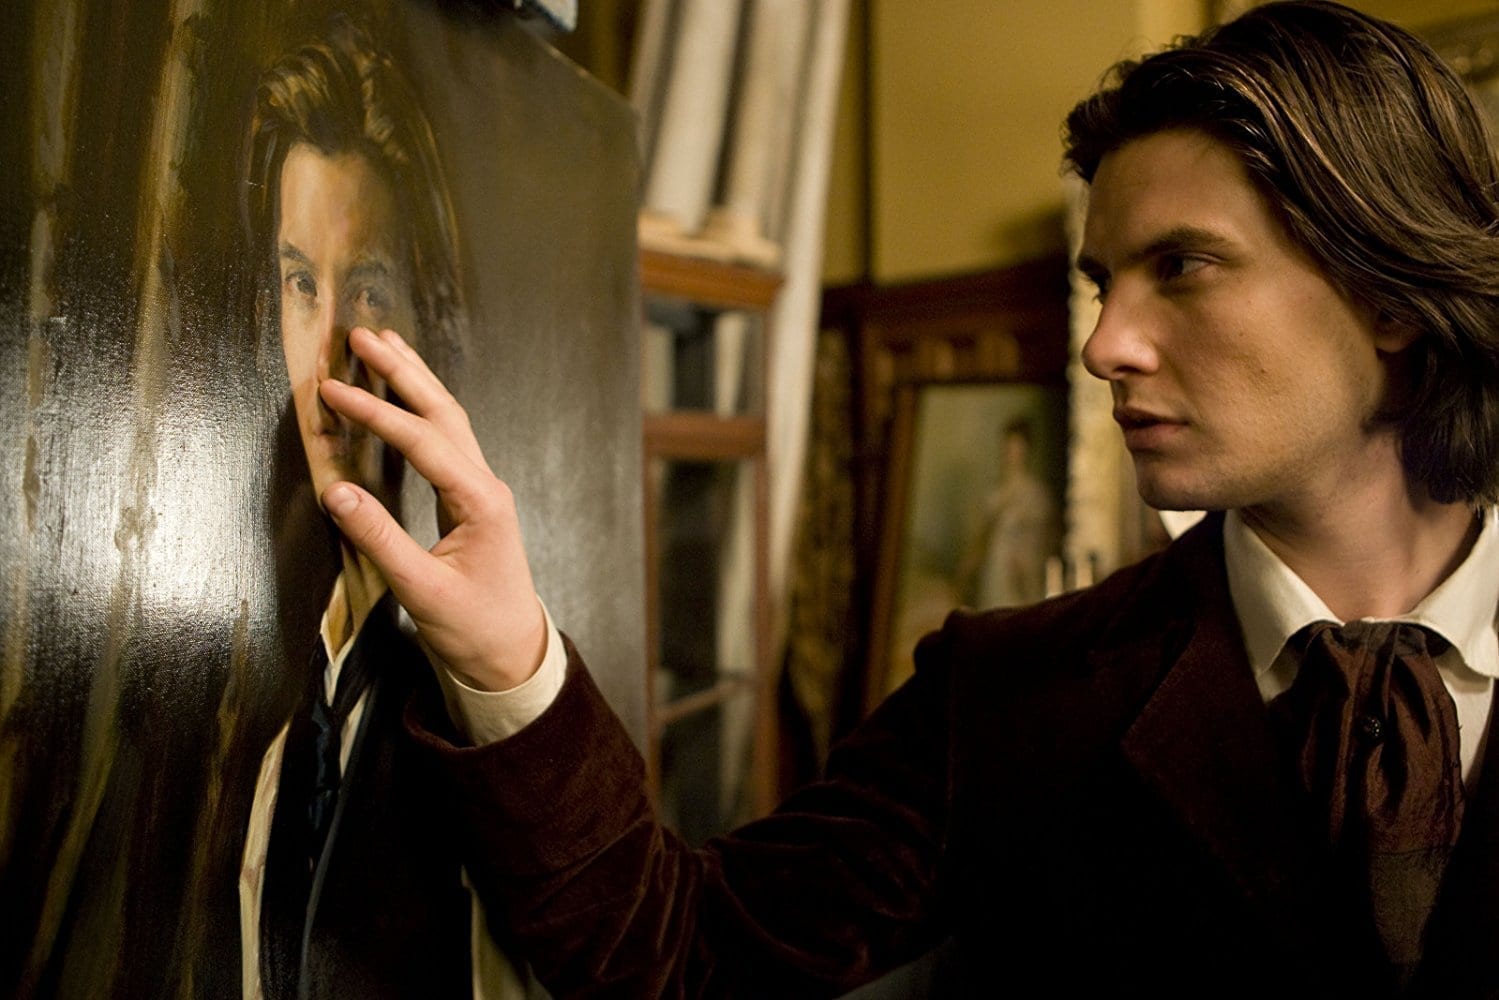 El Retrato de Dorian Gray (2009)